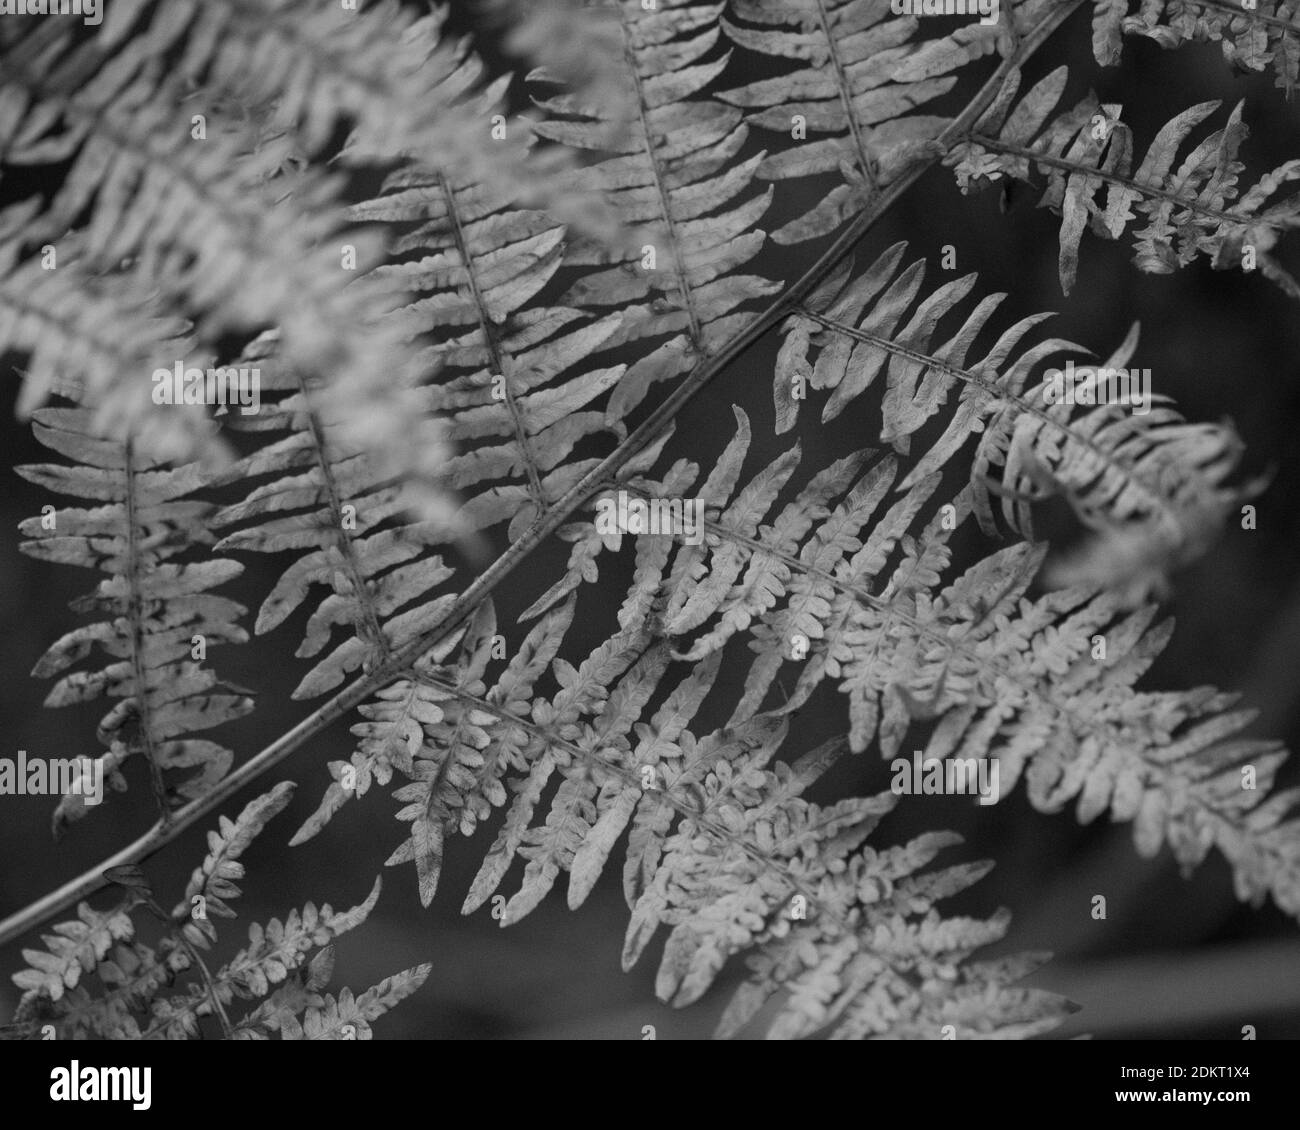 Ferns feuillus saumâtre, fermé en automne. New Forest, Noir et blanc, Hampshire, Angleterre, Royaume-Uni. Banque D'Images